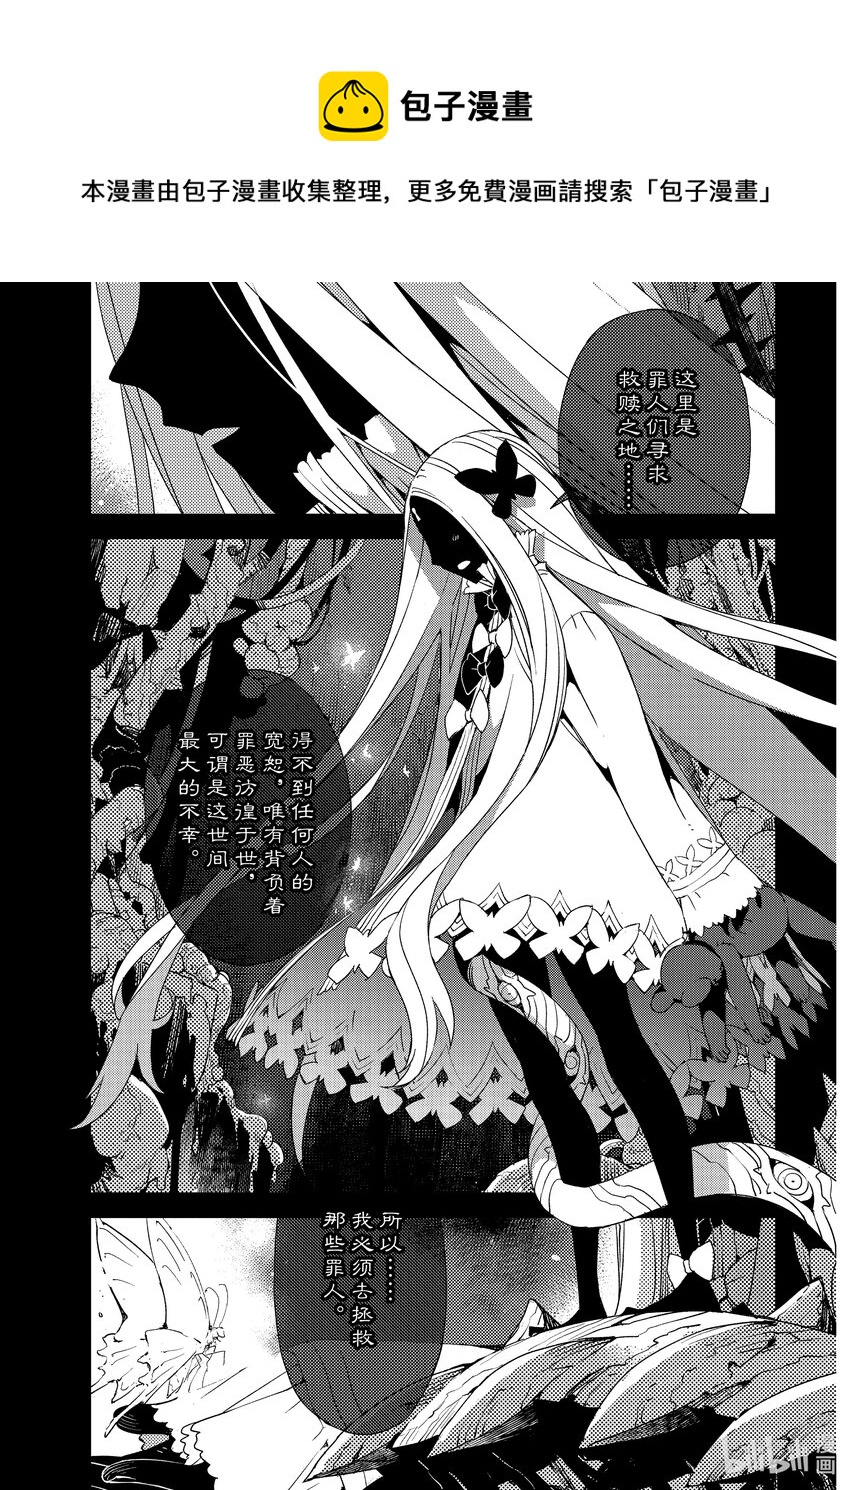 Fate/Grand Order -Epic of Remnant- 亞種特異點Ⅳ 禁忌降臨庭園 塞勒姆 異端塞勒姆 - 035 第四結—1 - 1